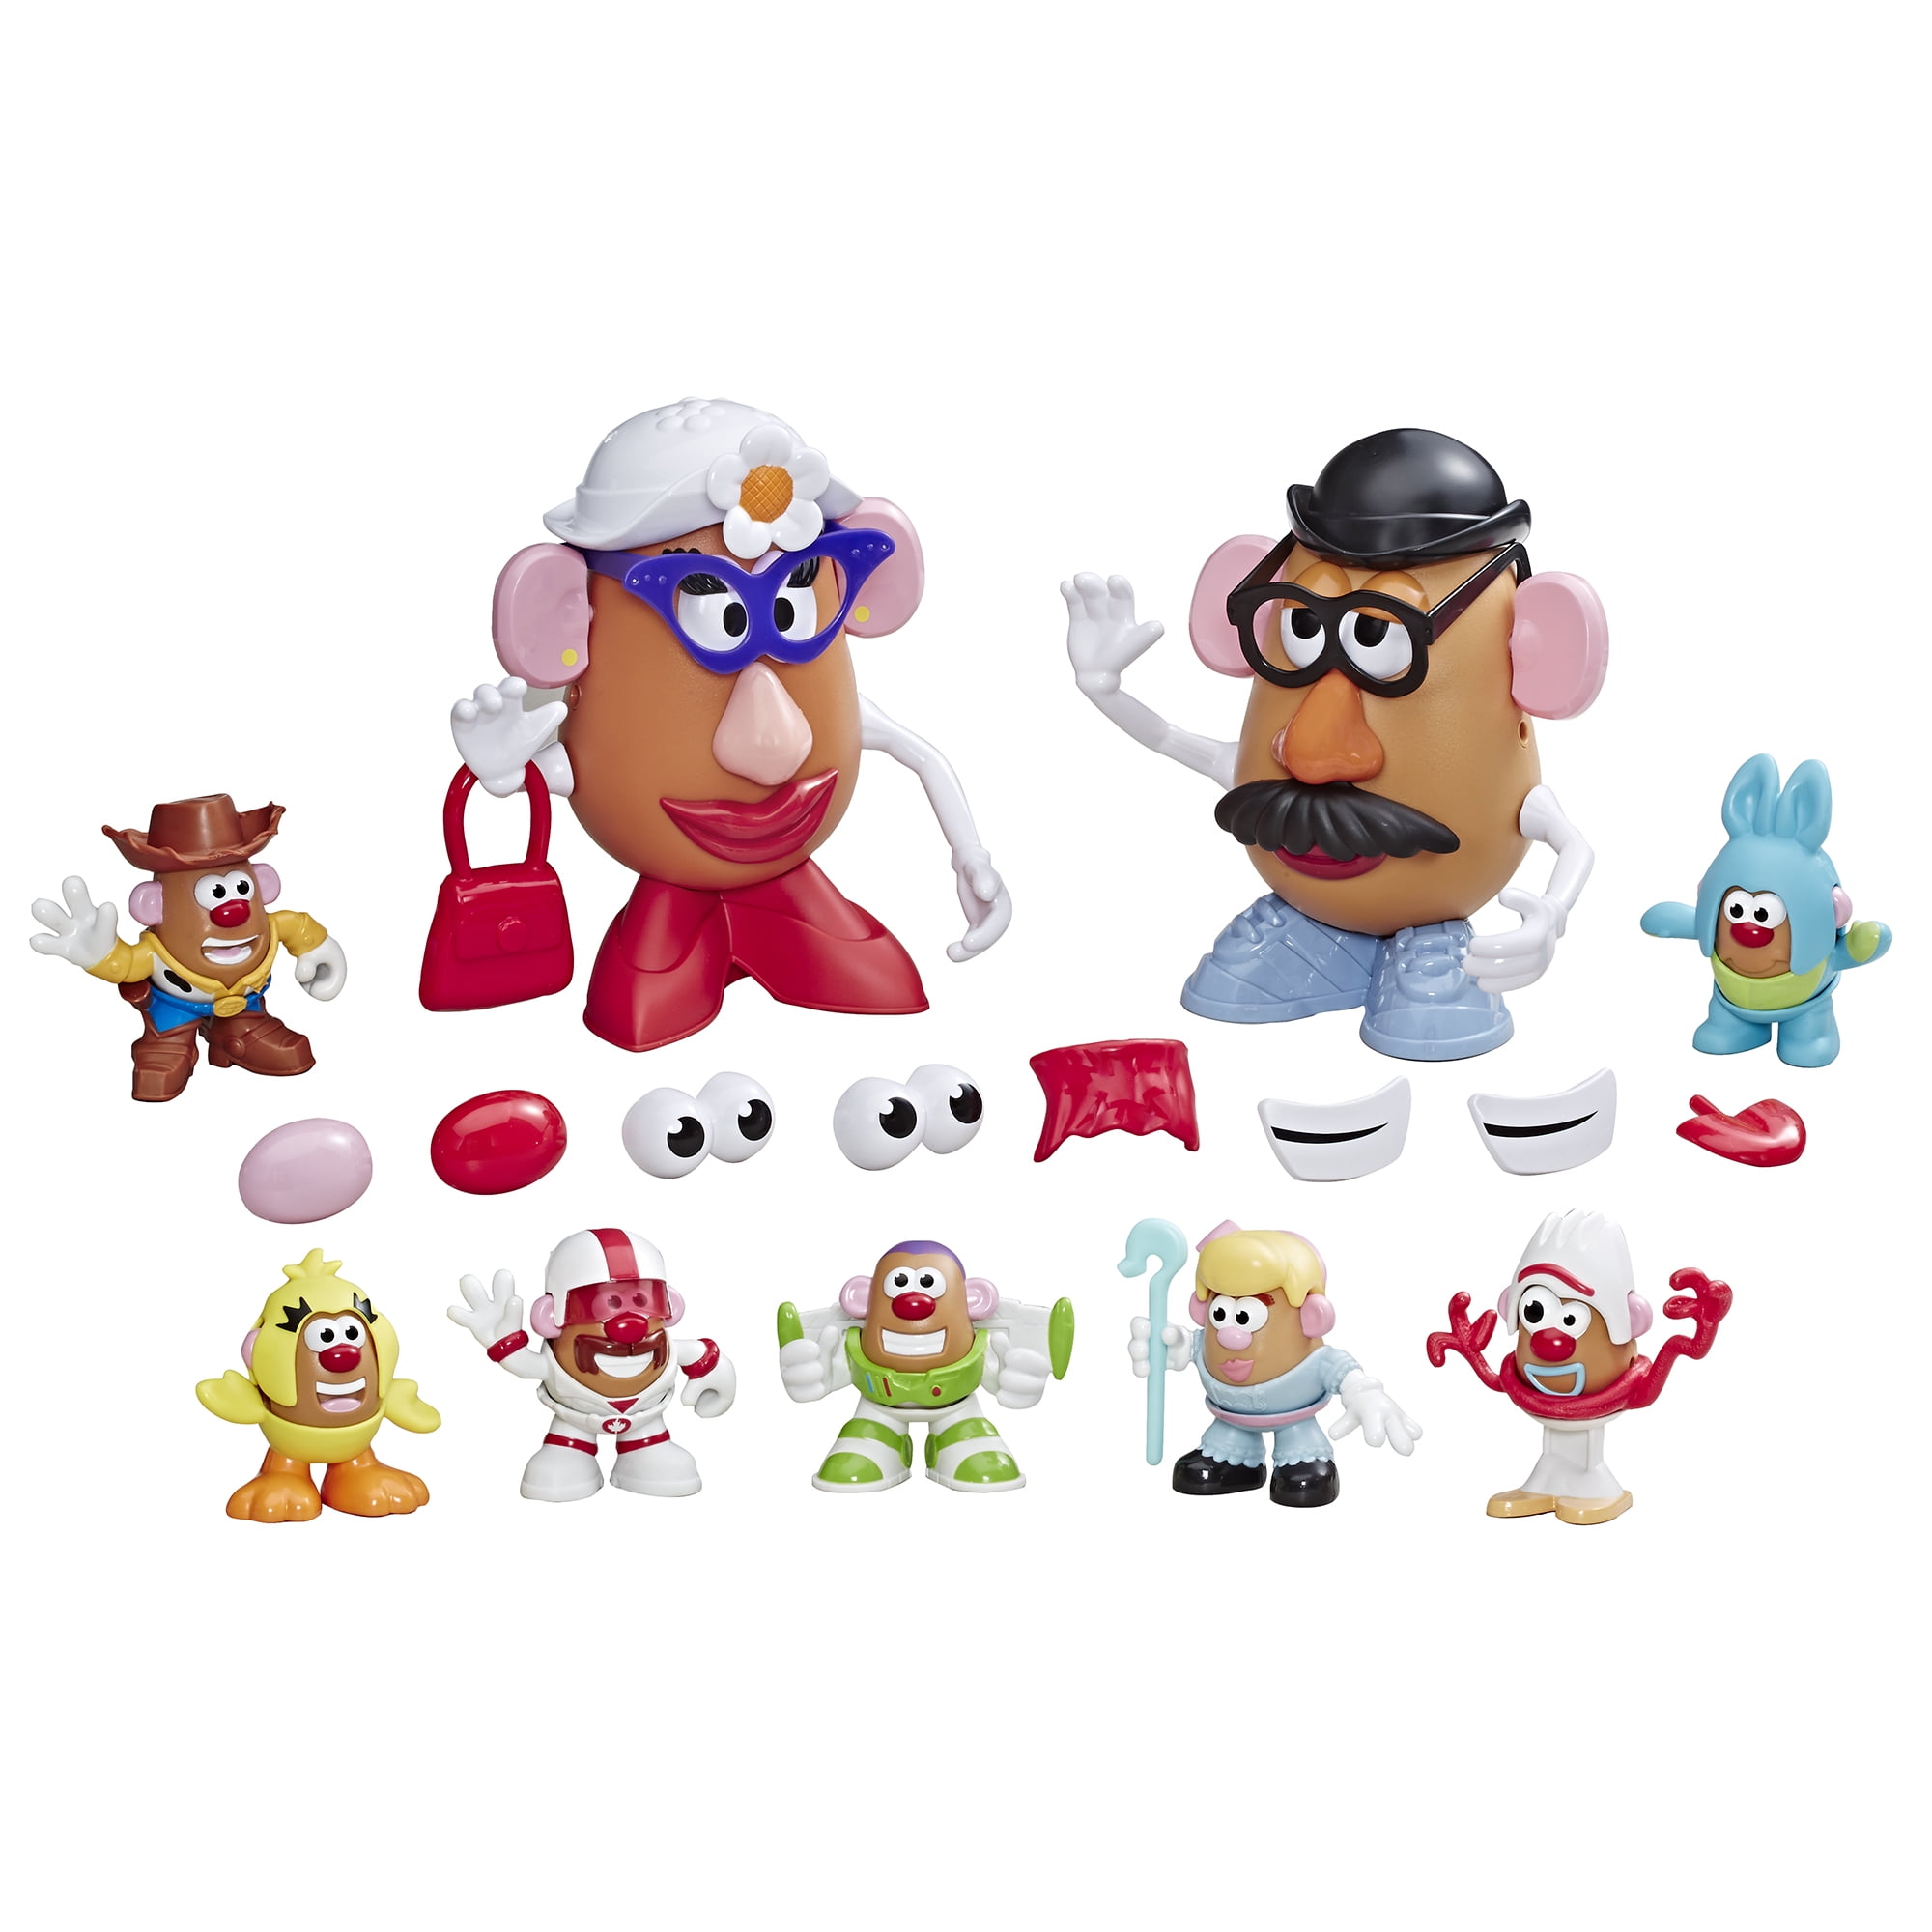 ~ Mr Potato Head by Playskool FriendsToy Story Disney Toy for Kids Age 2 